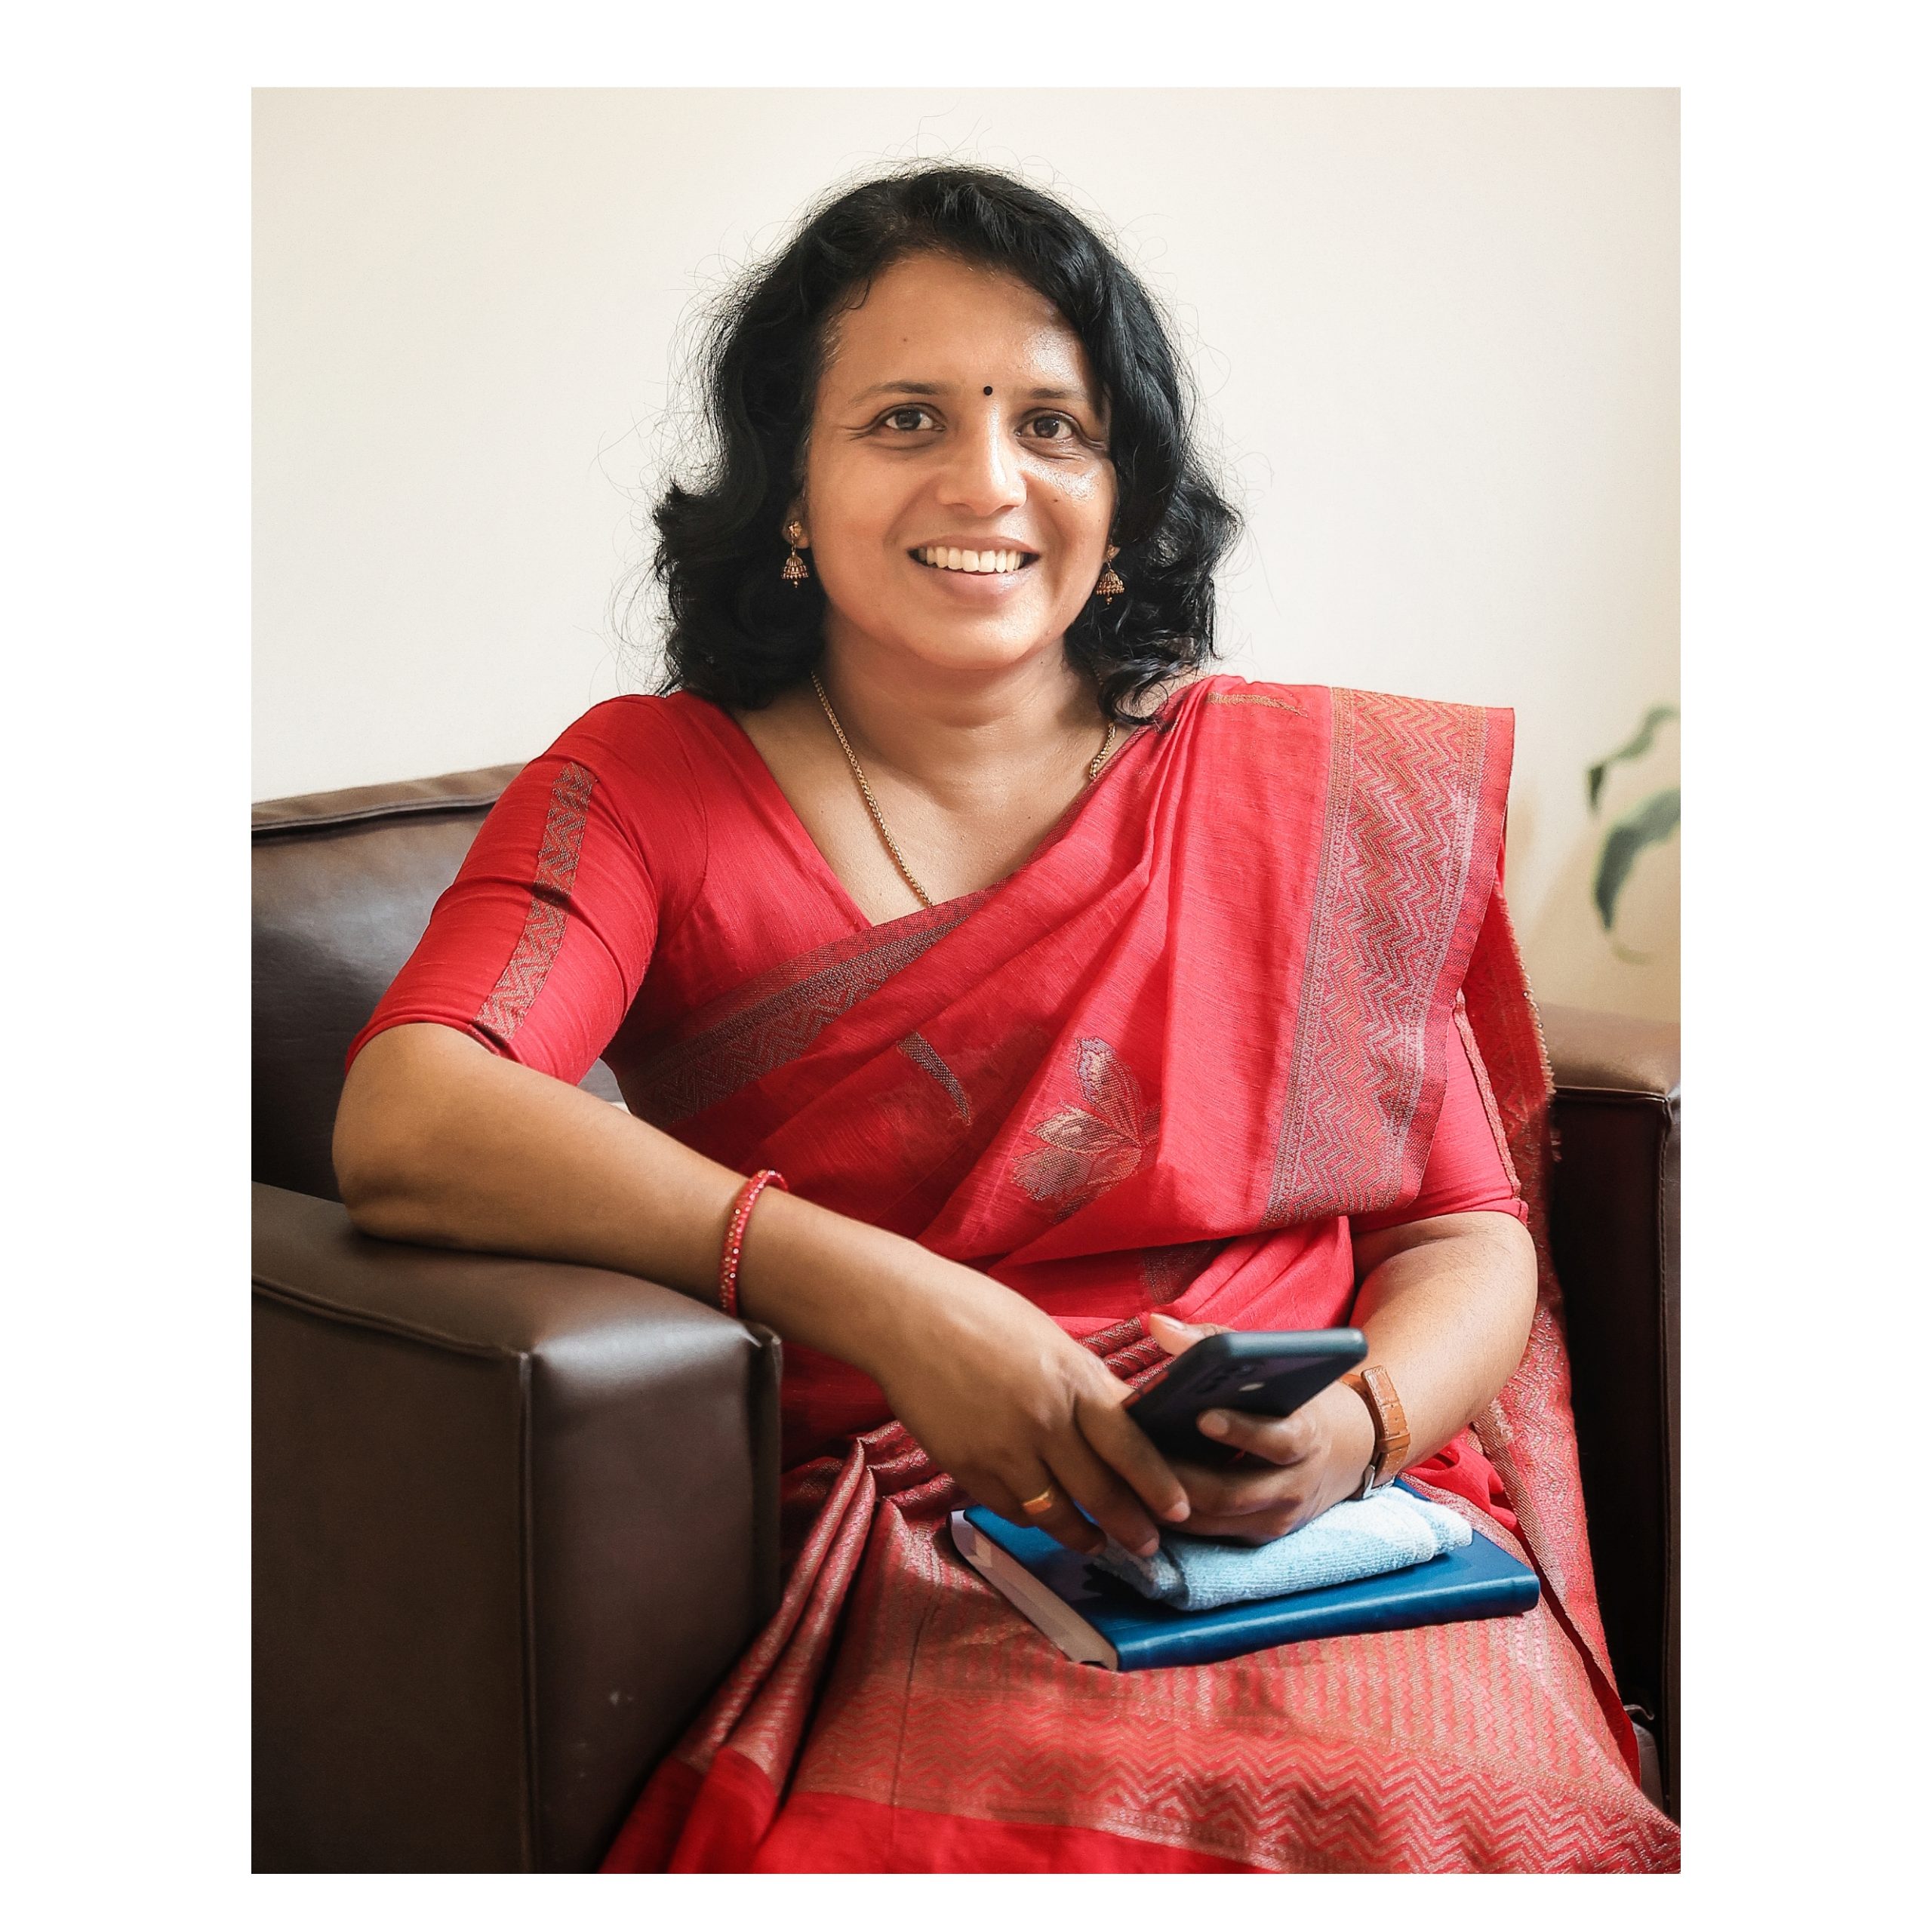 Ms. Raji Ramakrishnan Nair